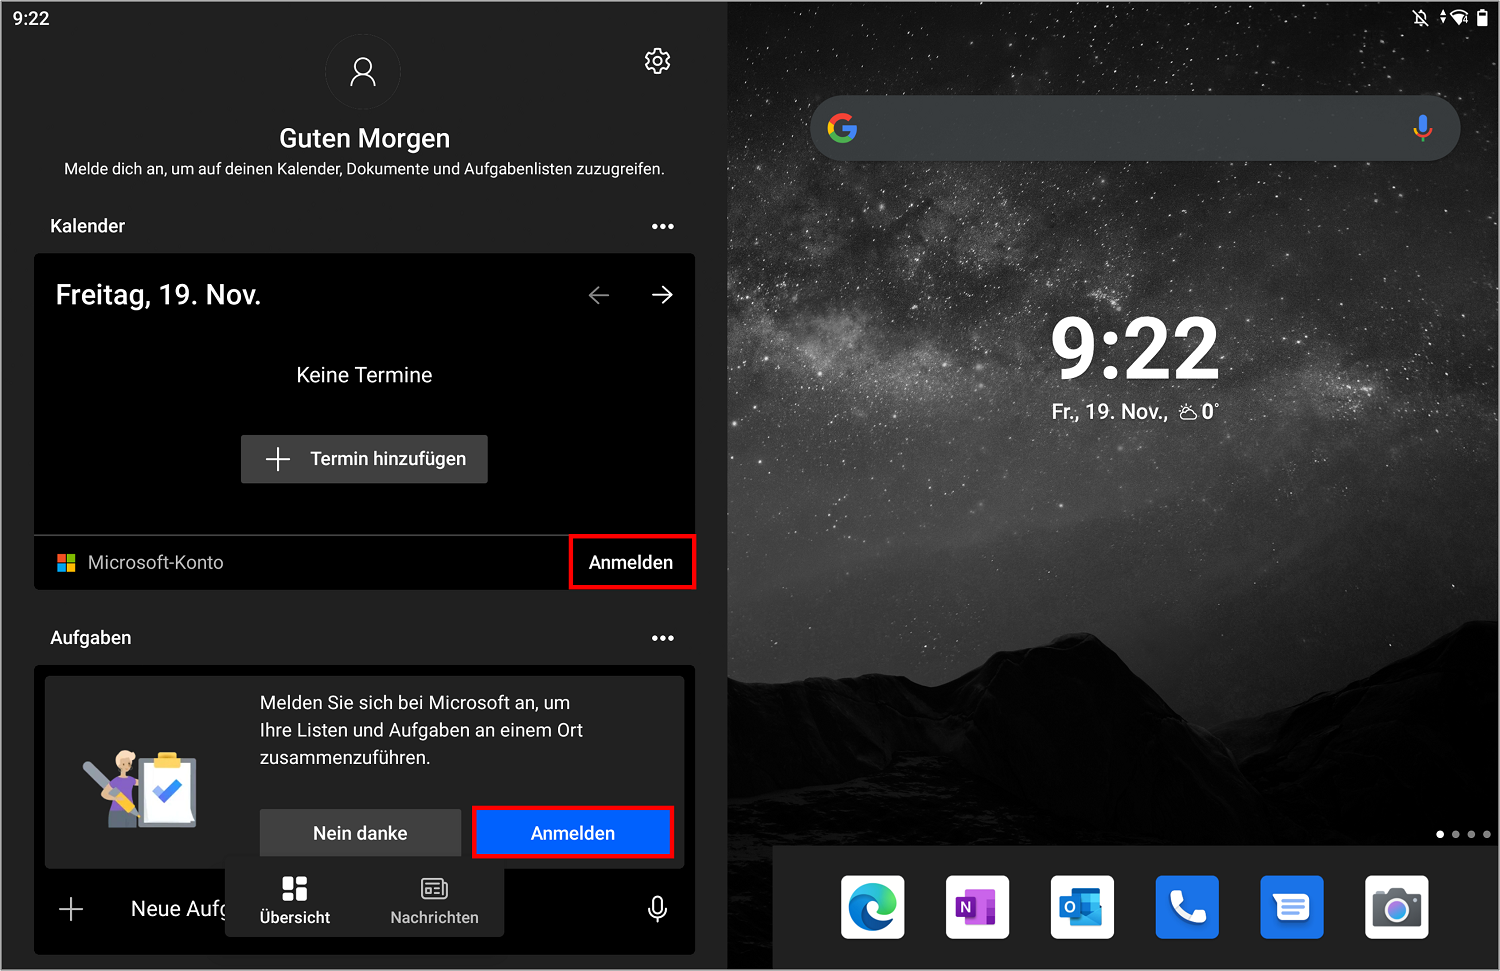 Mit dem Surface Duo können Sie sich einfach bei Ihrem Microsoft-Konto anmelden, indem Sie von links nach rechts wischen und auf "Anmelden" klicken.